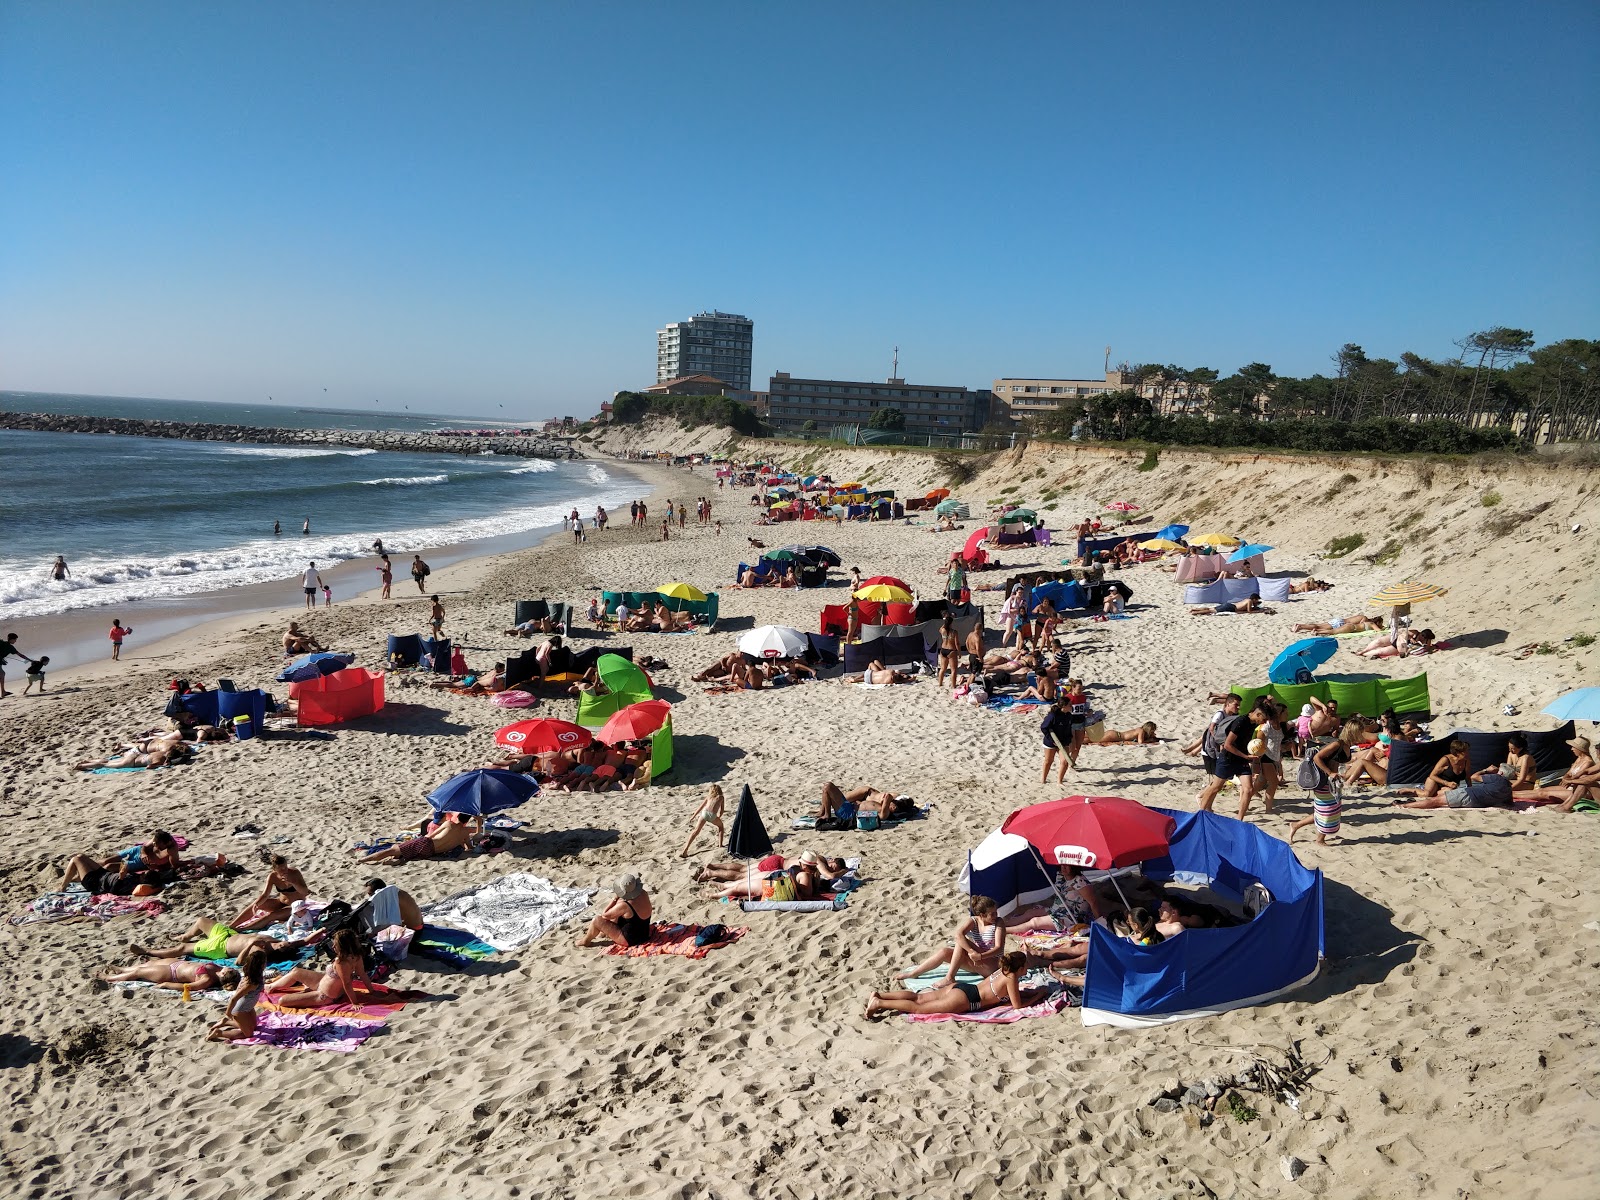 Praia da Bonanca'in fotoğrafı geniş plaj ile birlikte